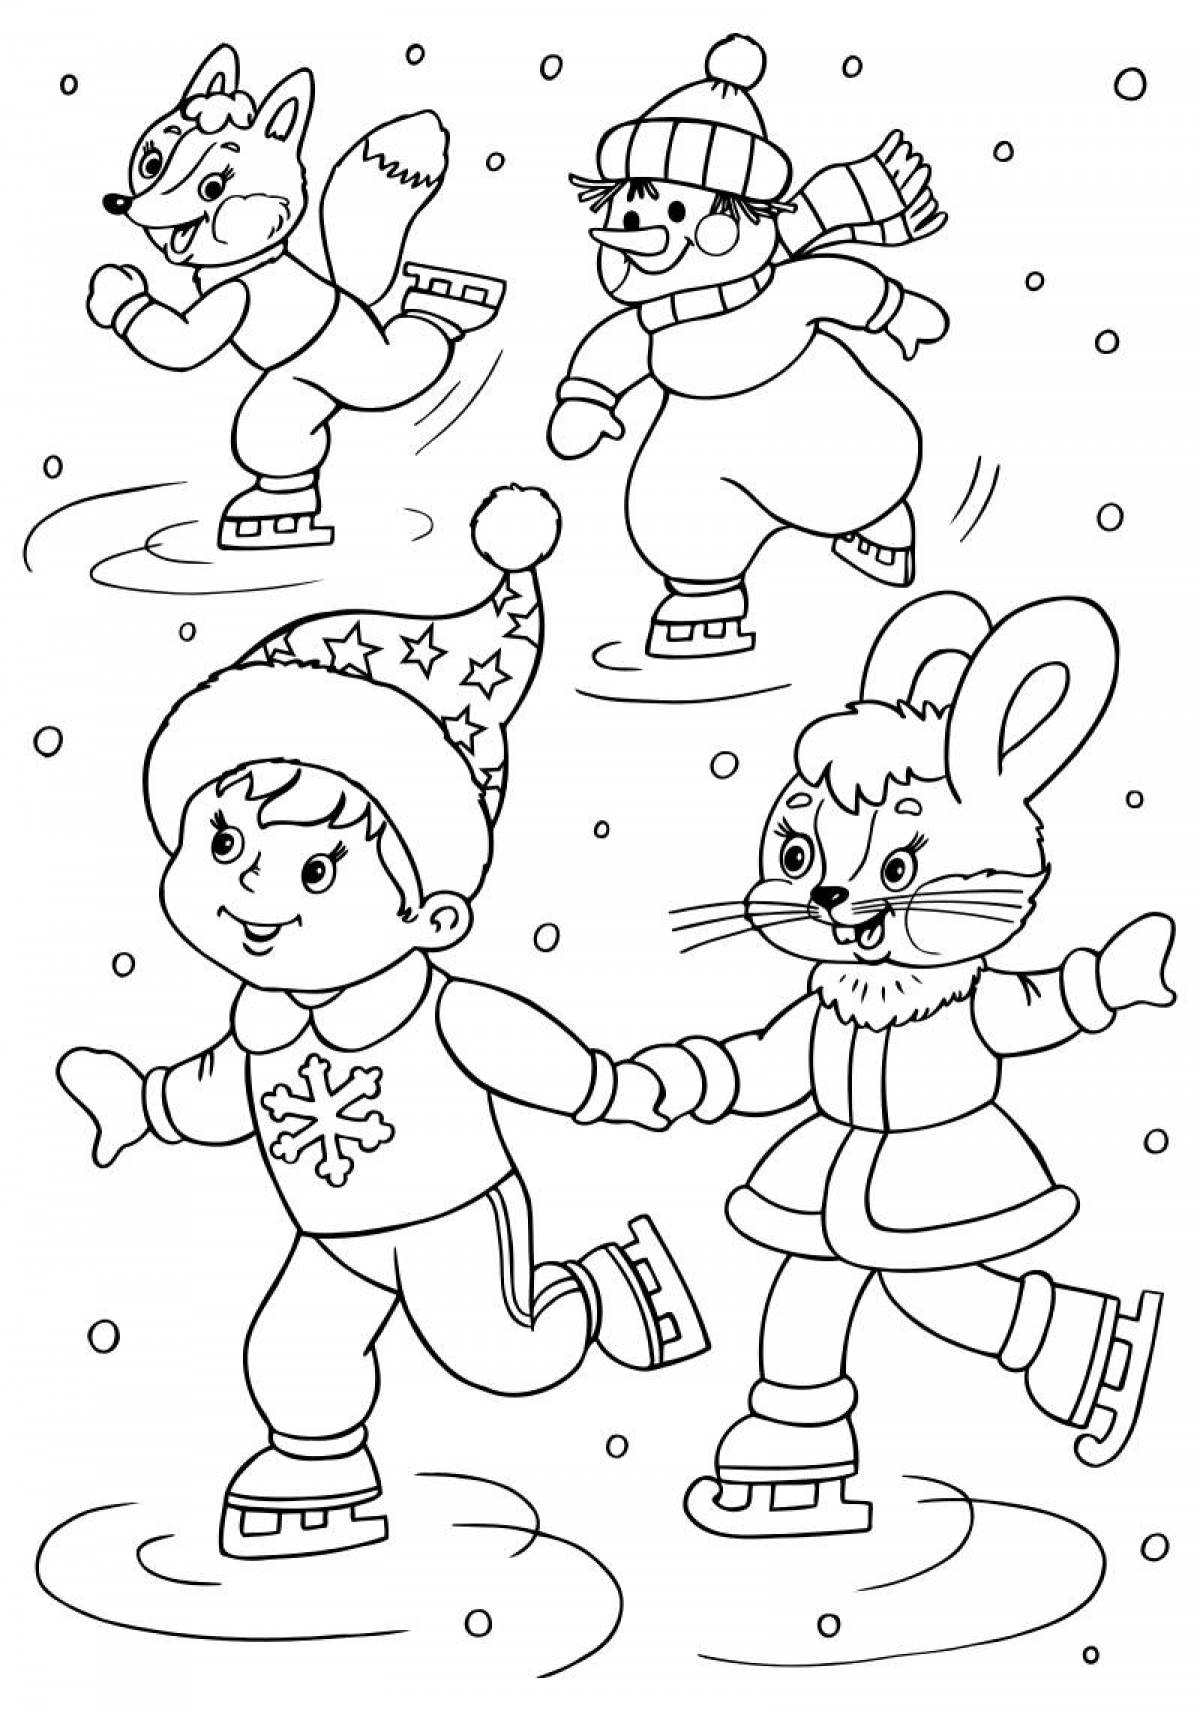 Величественная раскраска зима для детей 6-7 лет